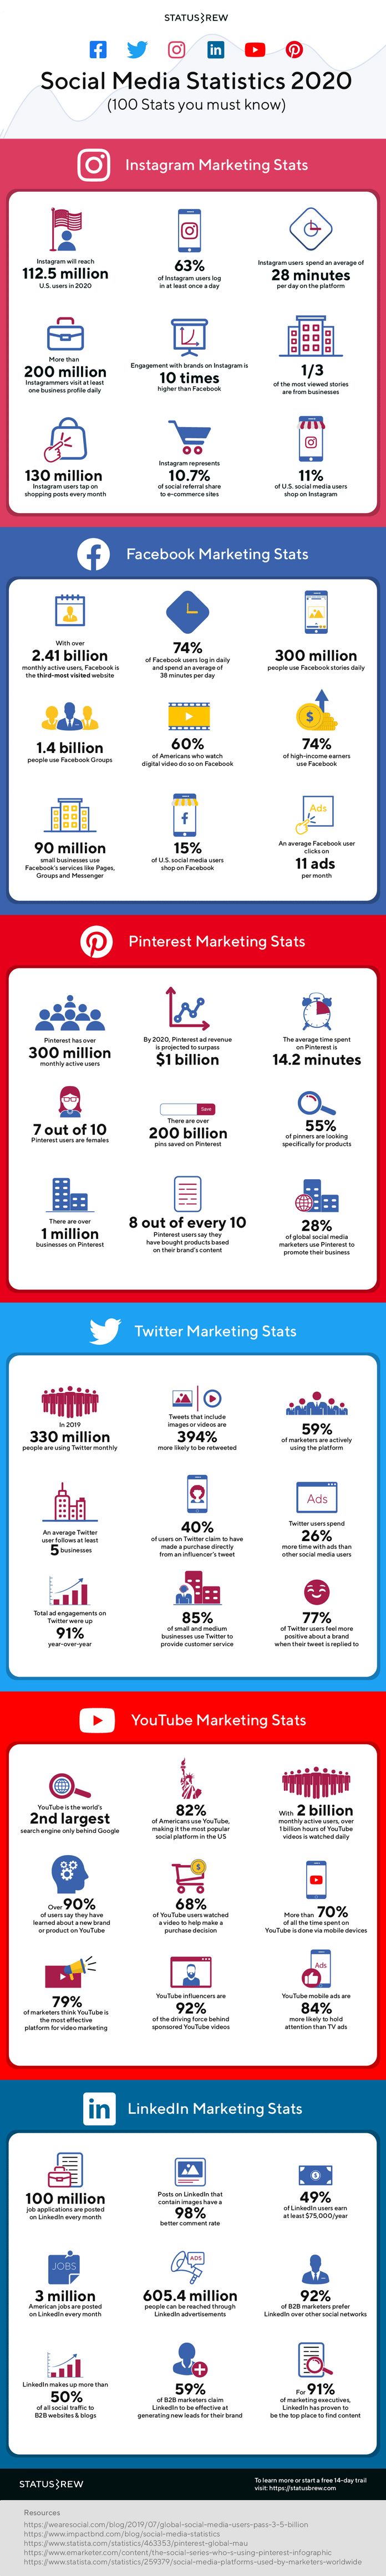 Social media gebruik in cijfers